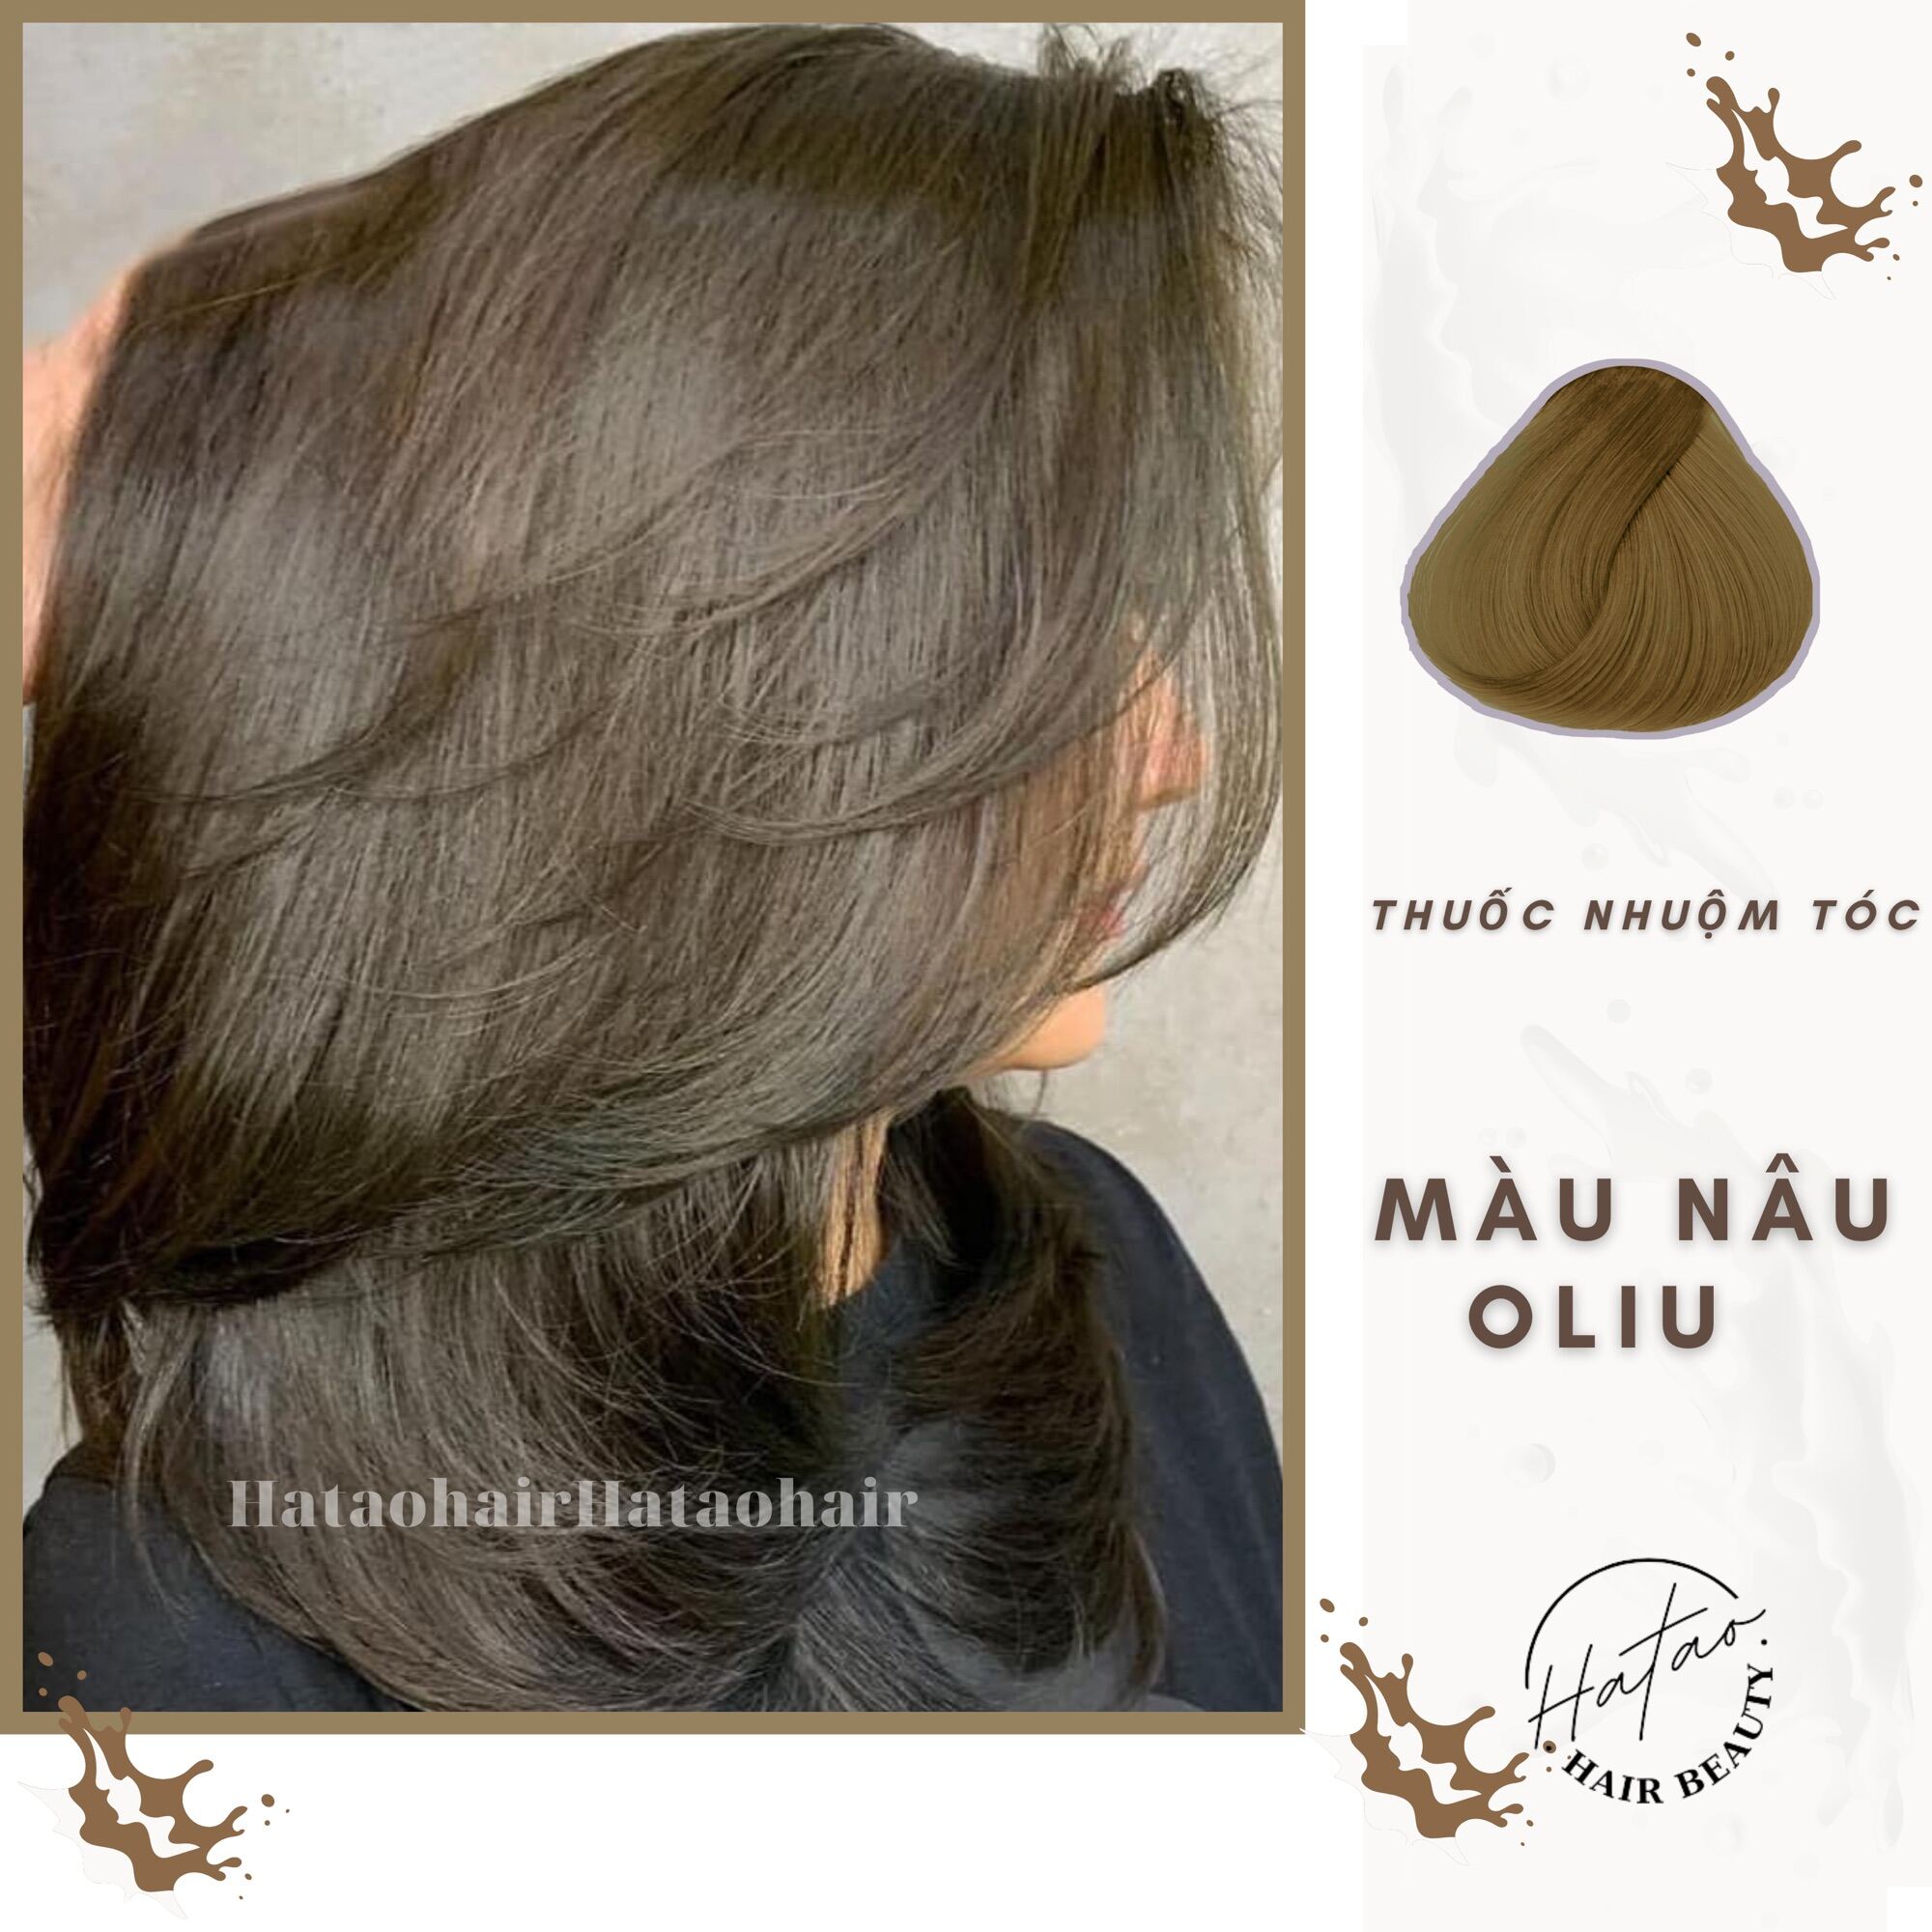 Cửa hàng hatao-hair: Cửa hàng hatao-hair là nơi lý tưởng để bạn tìm kiếm sản phẩm chăm sóc tóc chất lượng. Đội ngũ nhân viên tận tâm và chuyên nghiệp sẽ giúp bạn chọn lựa sản phẩm phù hợp với tóc của mình.